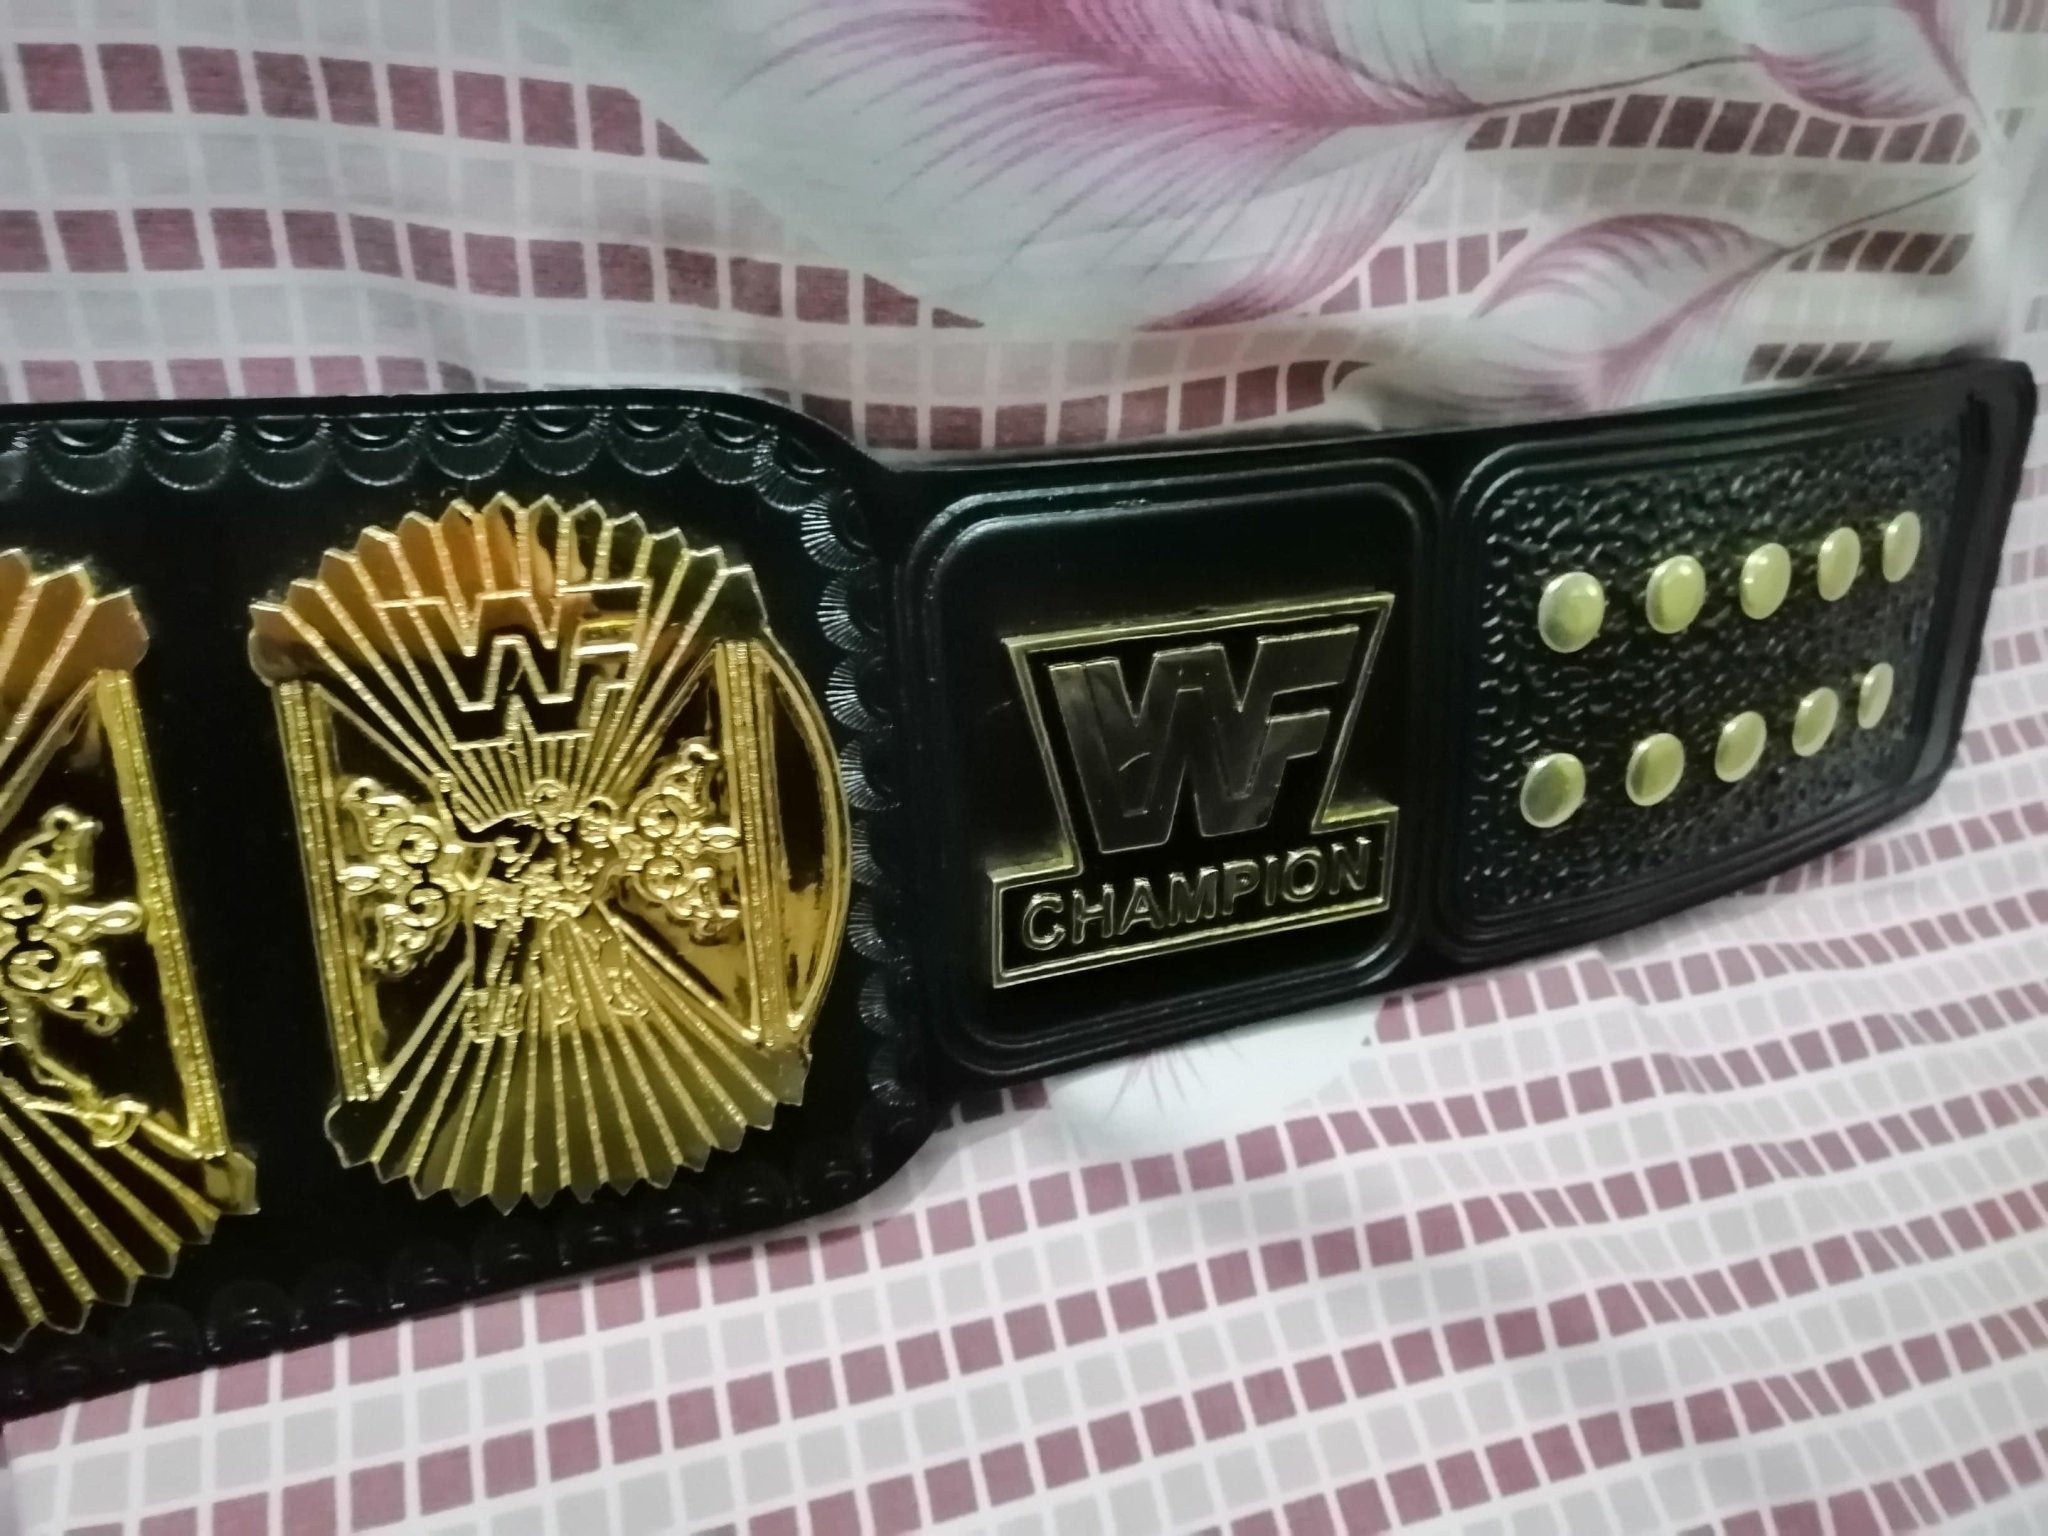 WWF WINGED EAGLE 24K GOLD Championship Title Belt - Zees Belts